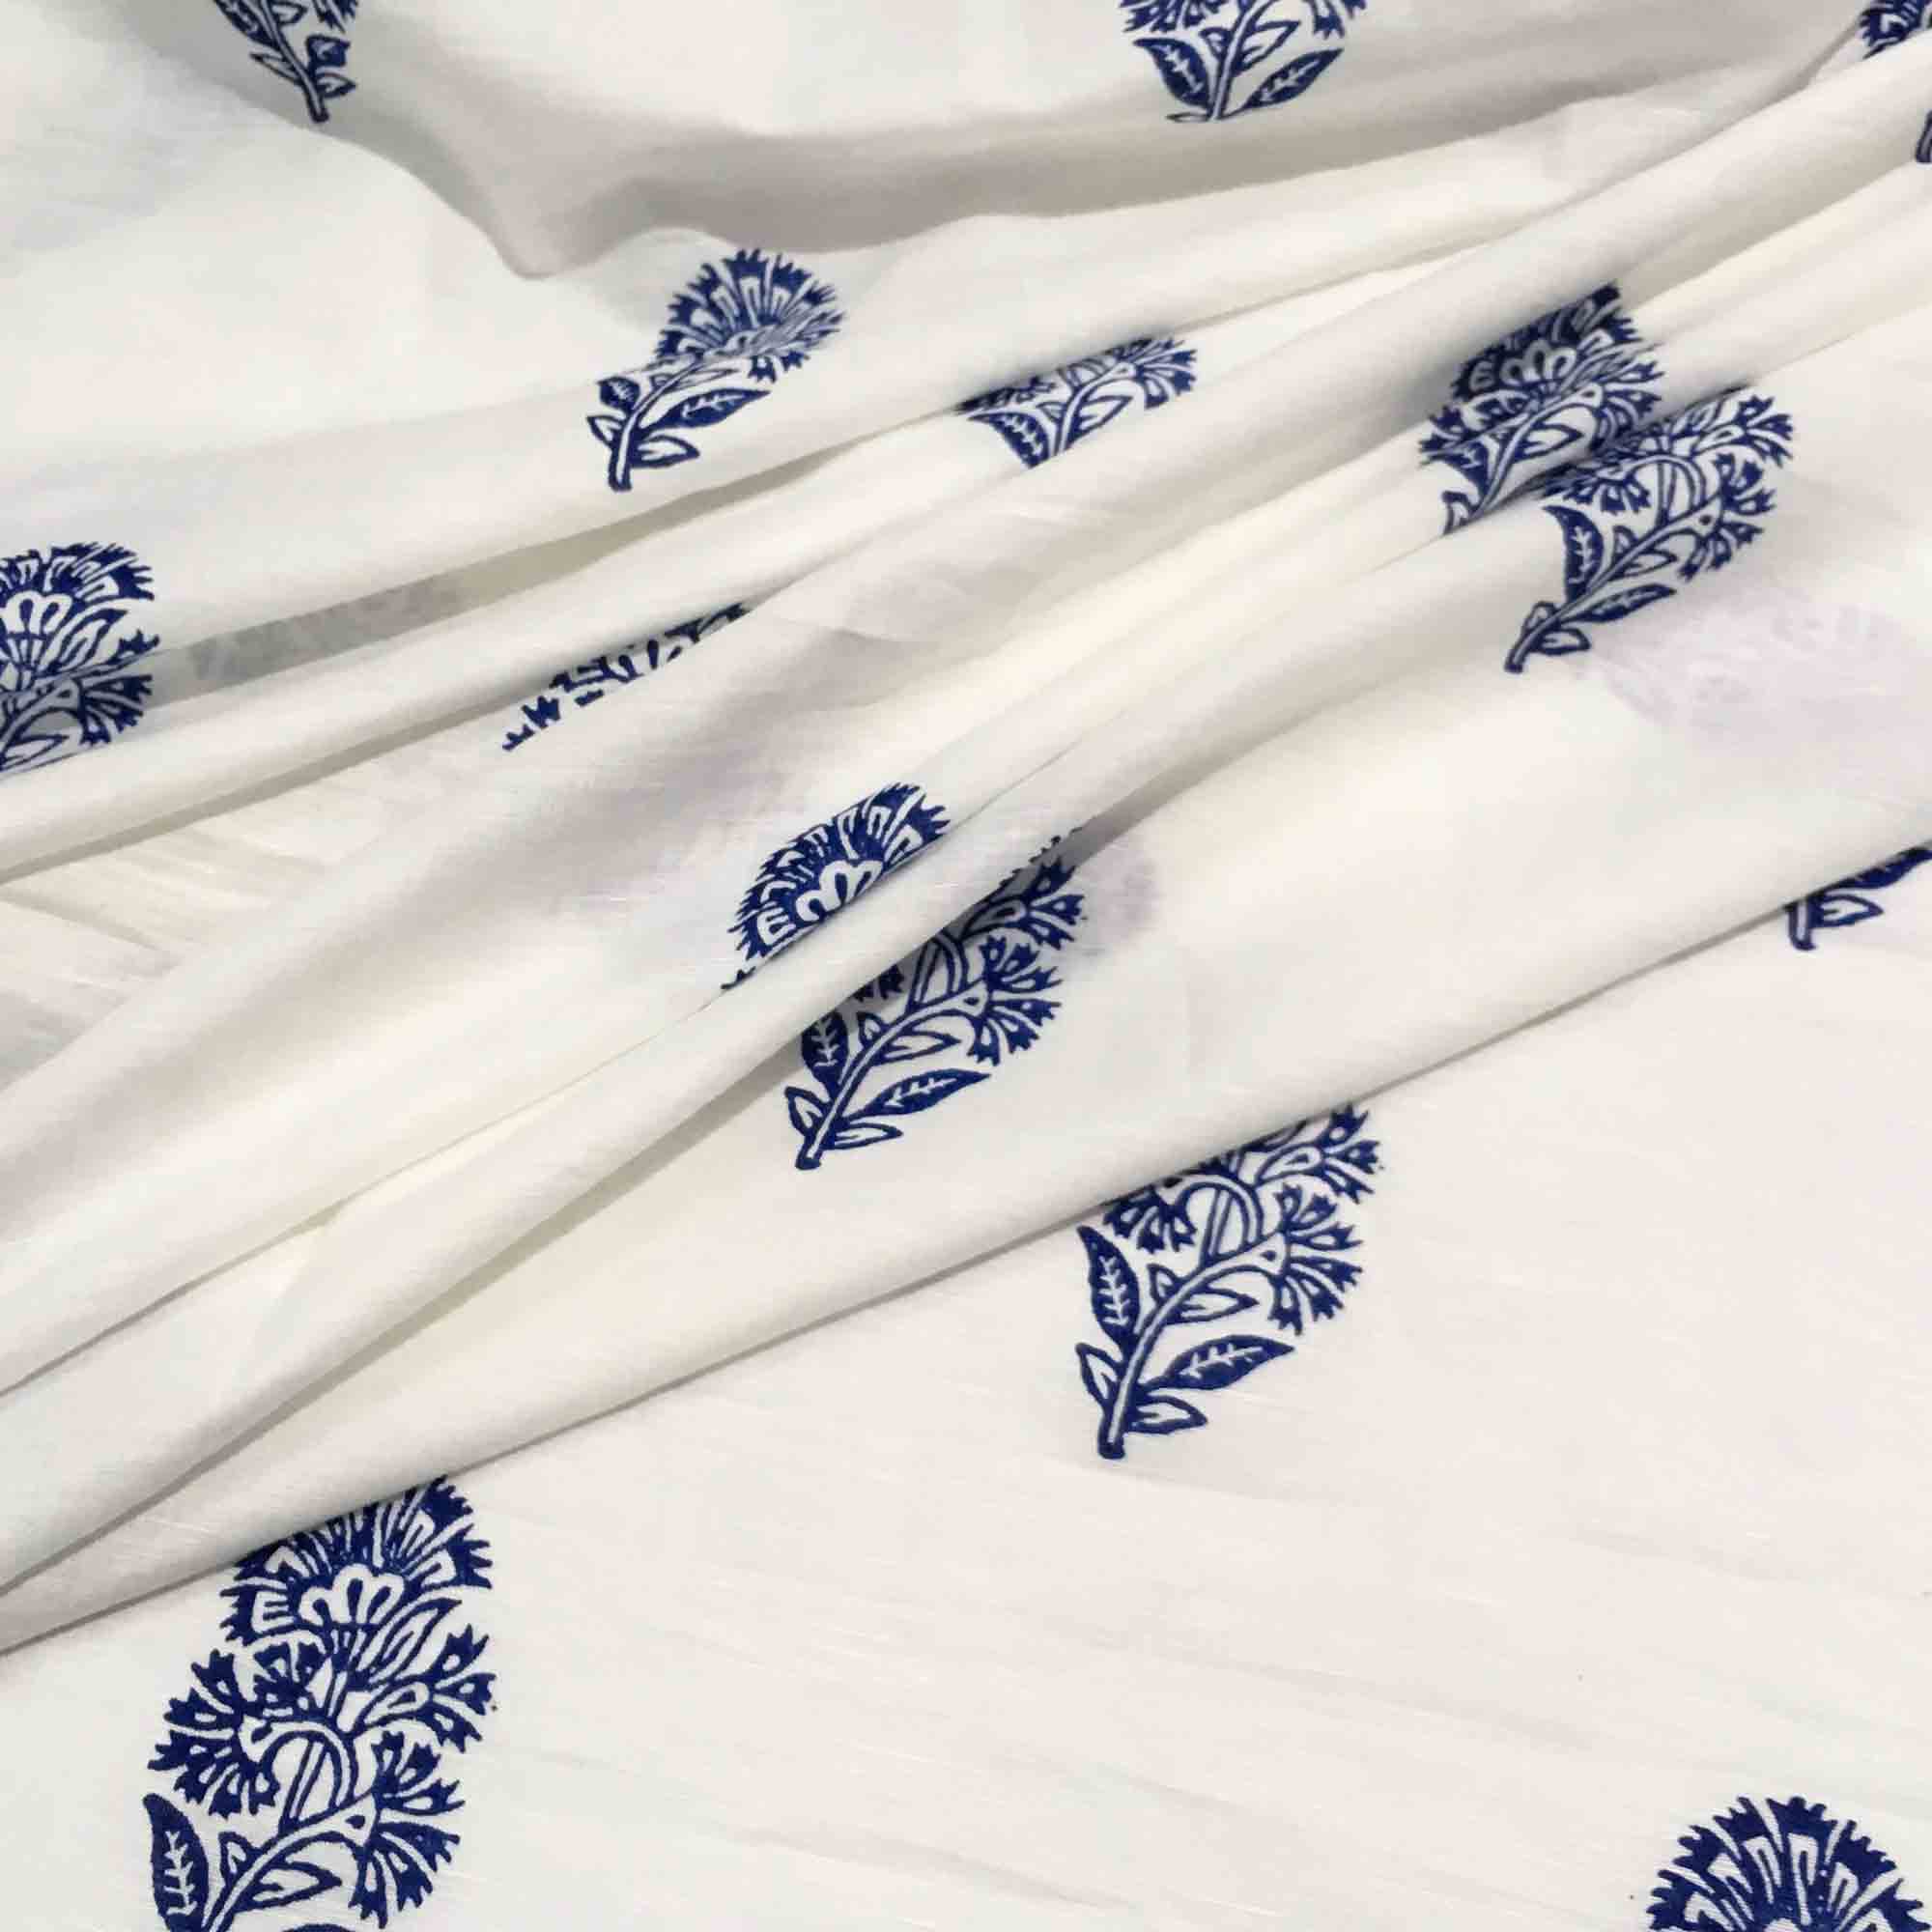 Kashmir Flower Printed Linen Buy Online from DesiCrafts